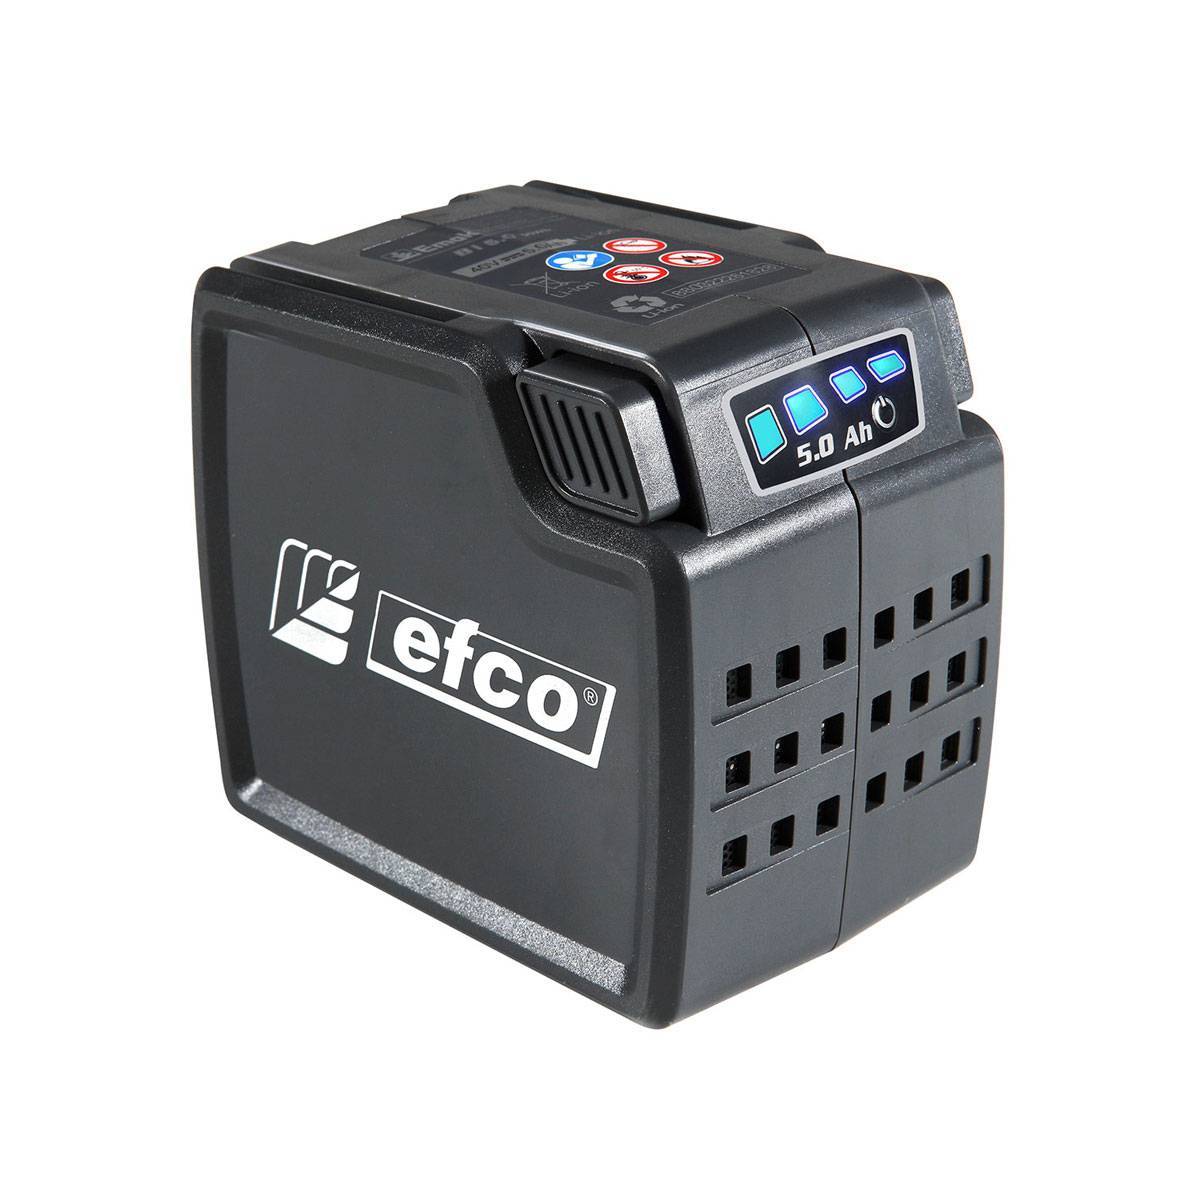 Decespugliatore a batteria Efco DSi 30 - batteria 5,0 Ah e caricabatteria CRG - Immagine 3